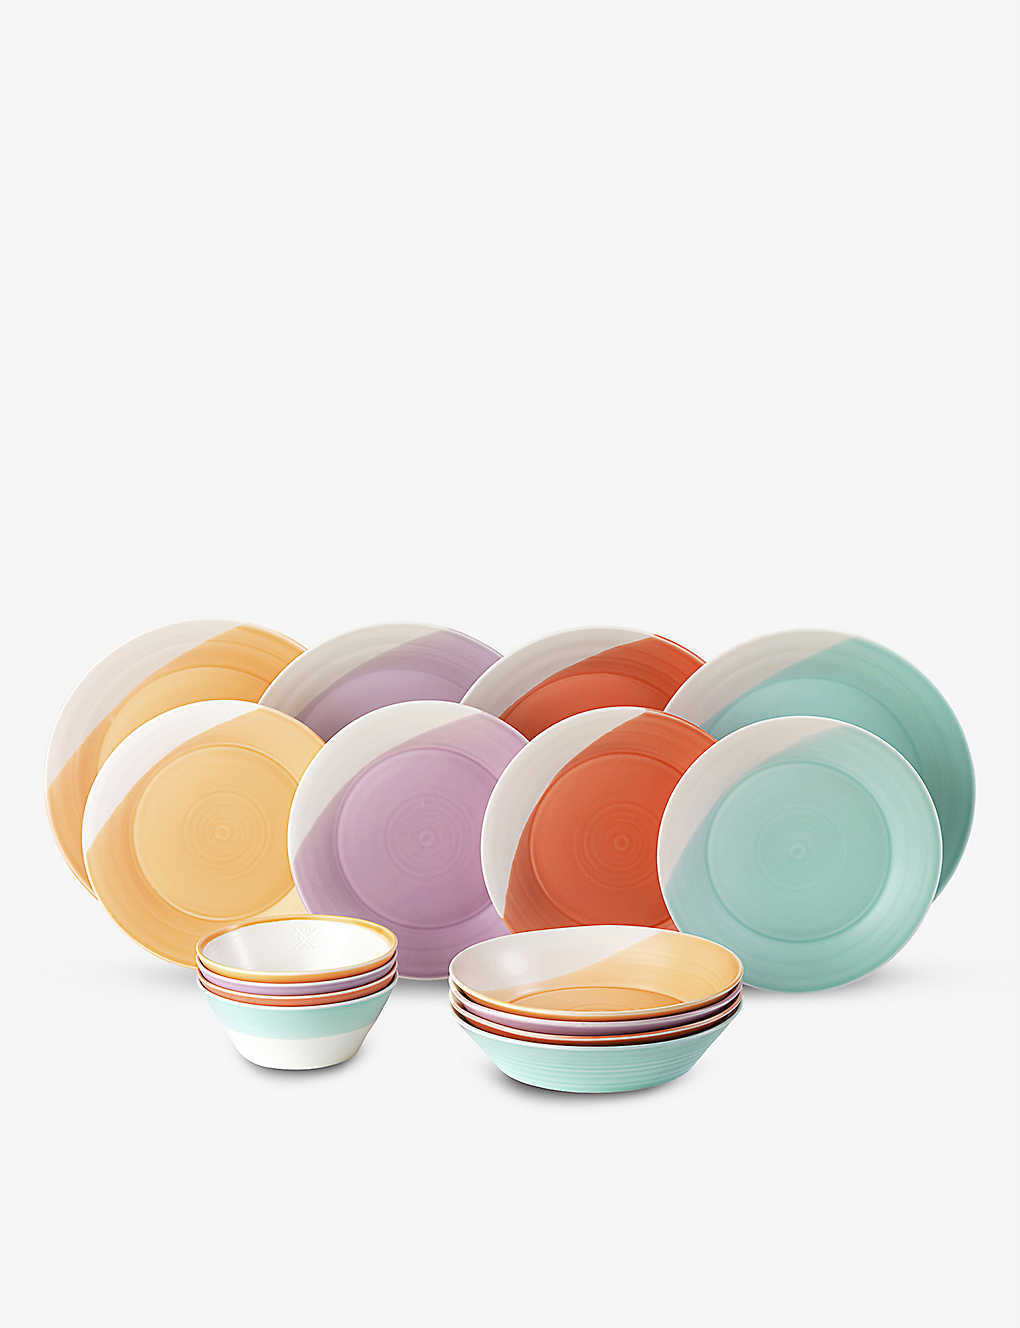 ROYAL DOULTON 1815 ブライツ 器プレート ボウル 16個セット 1815 Brights porcelain plates and bowls set of sixteen